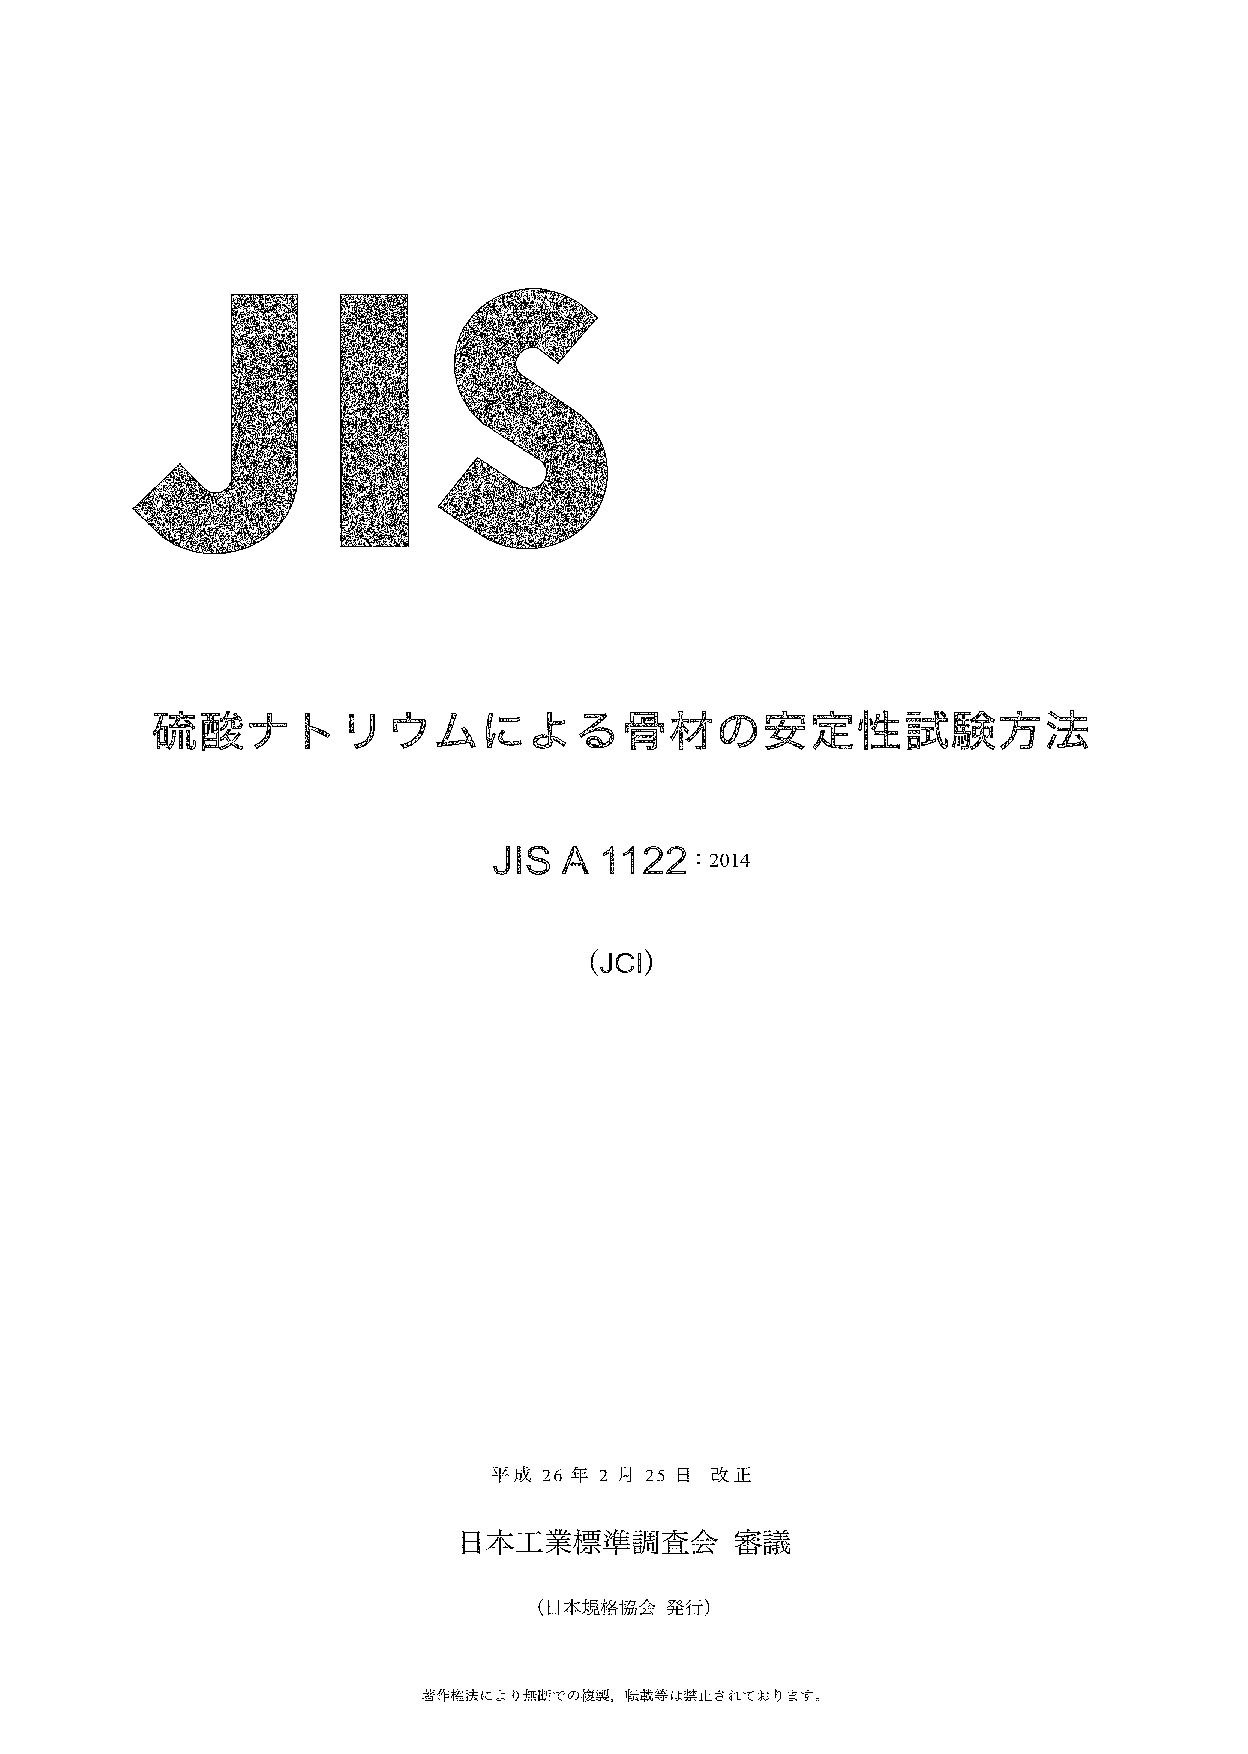 JIS A 1122:2014封面图